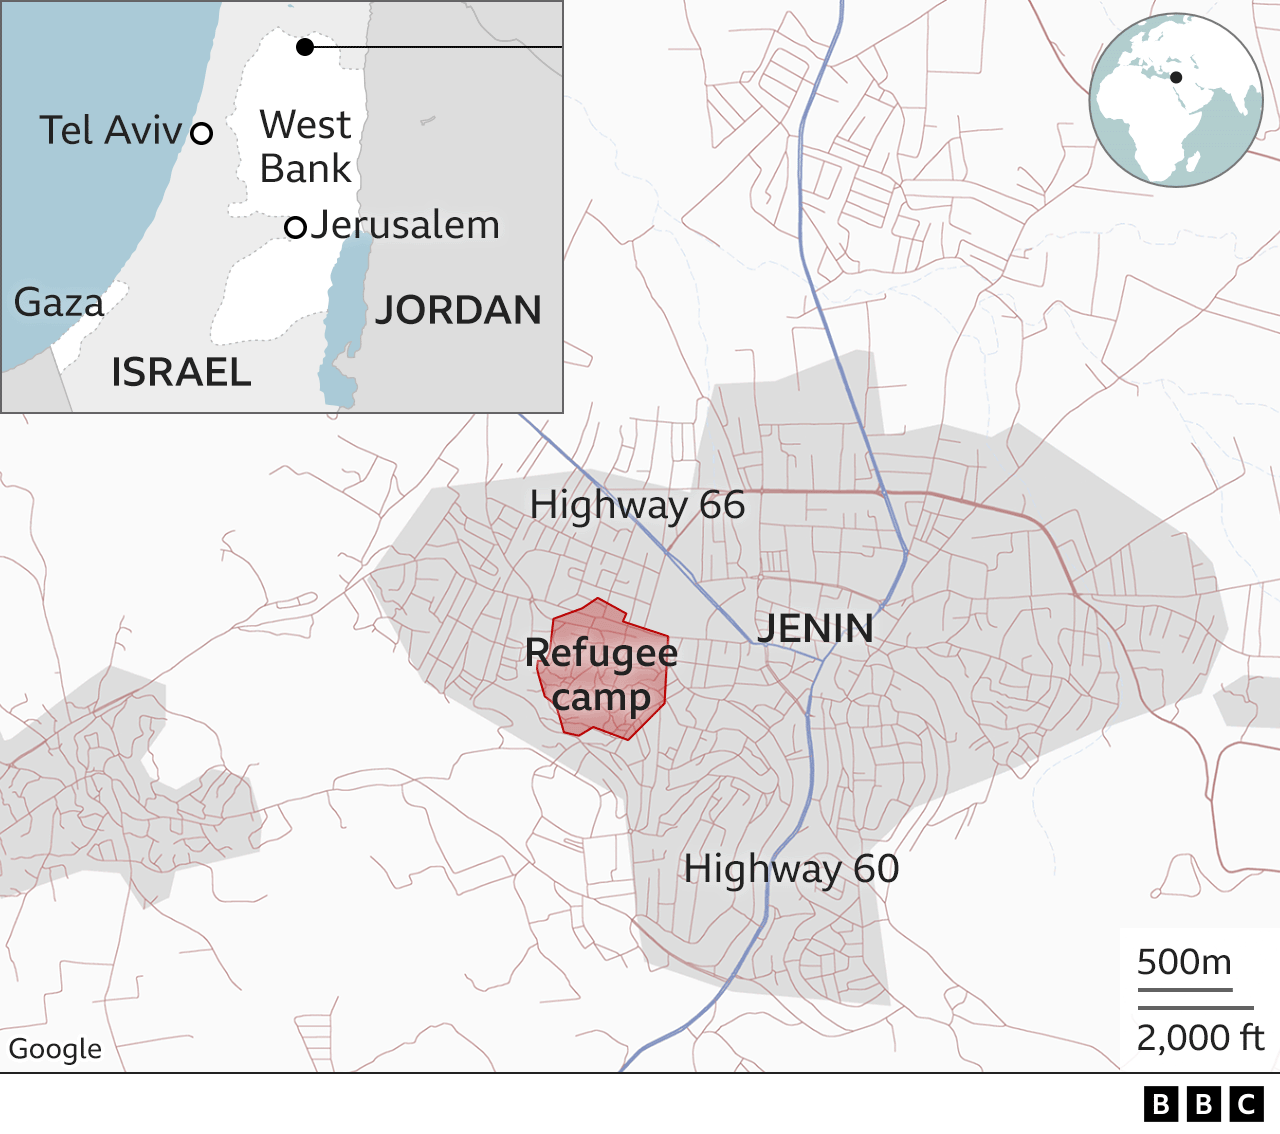 Karte von Jenin und seinem Flüchtlingslager